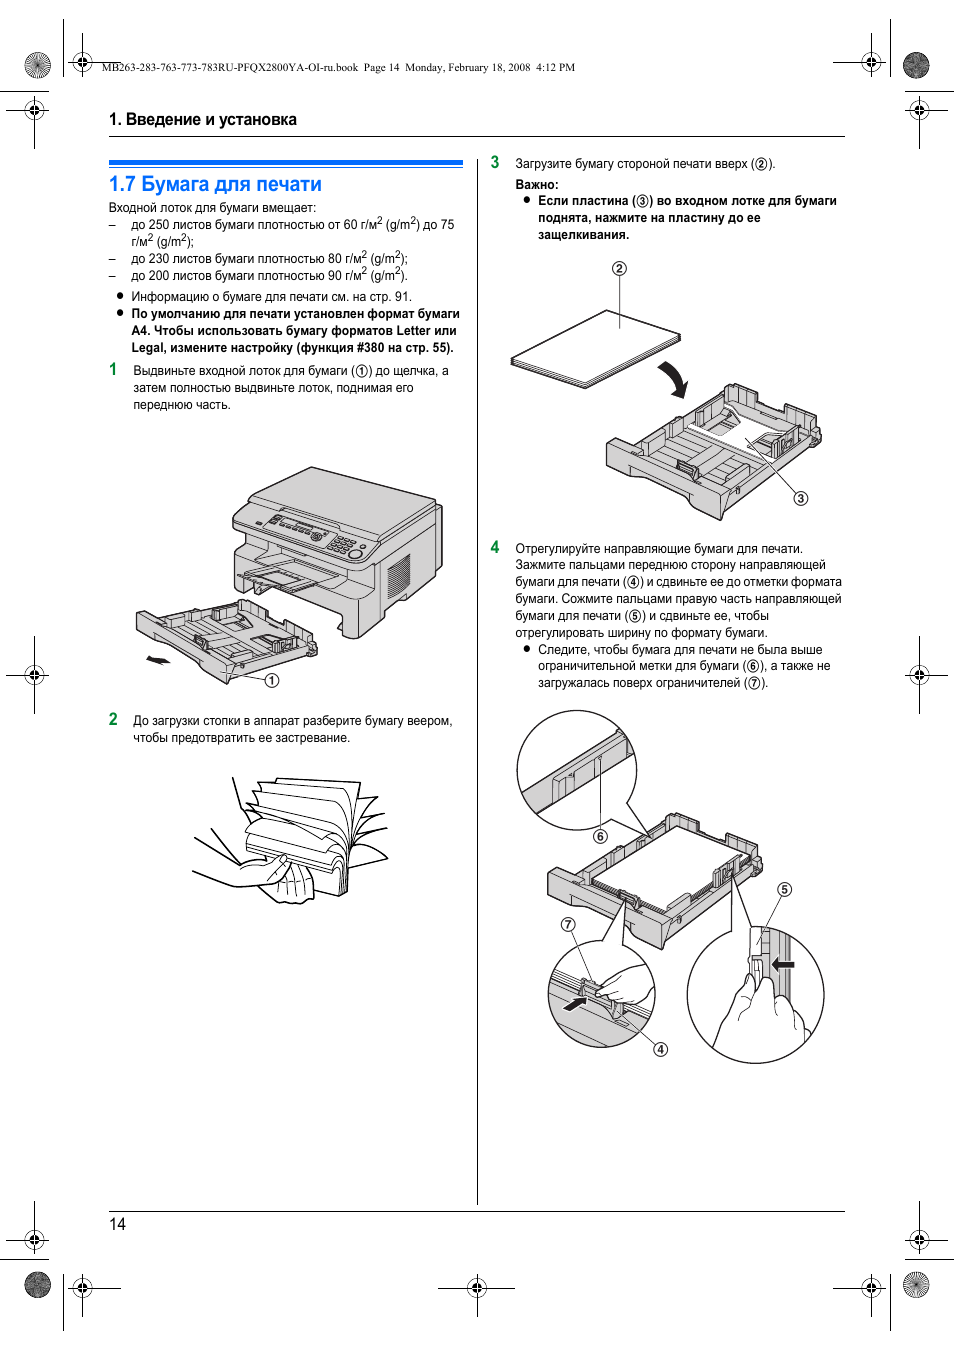 7 бумага для печати, Бумага для печати, Введение и установка 14 | Инструкция по эксплуатации Panasonic KX-MB283 | Страница 14 / 104